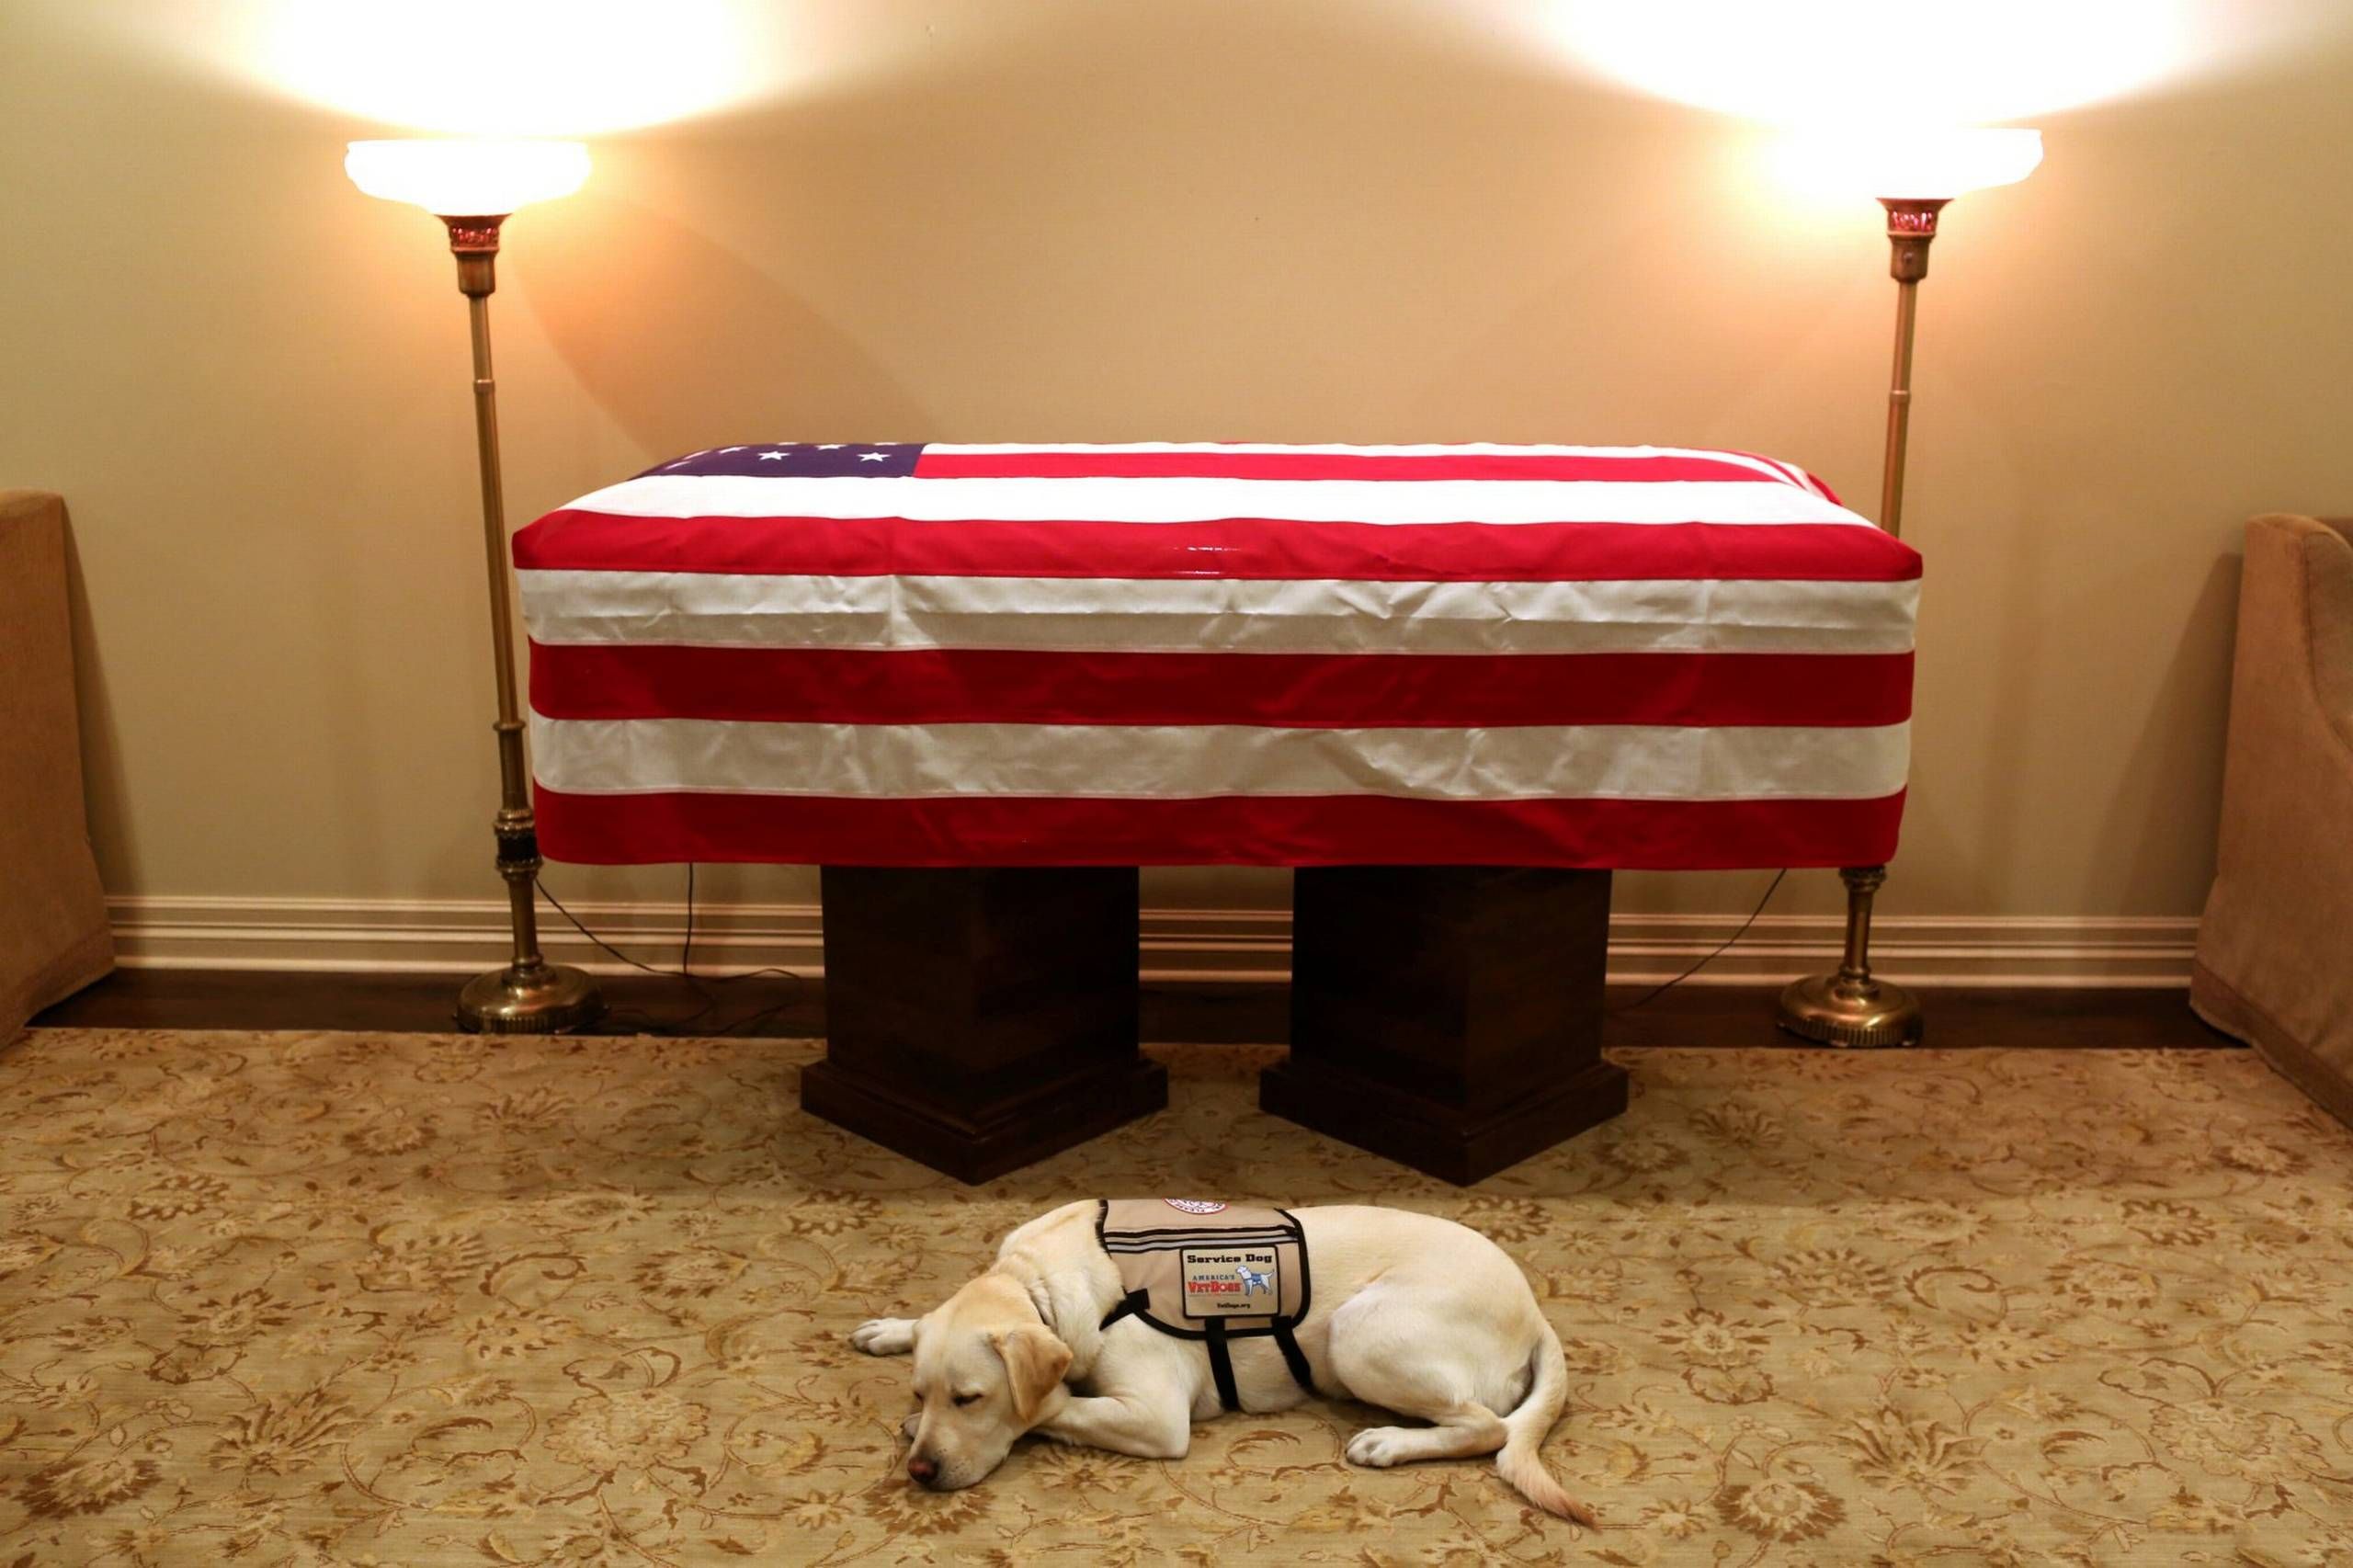 Servicehund ærer og følger fortsat den afdøde